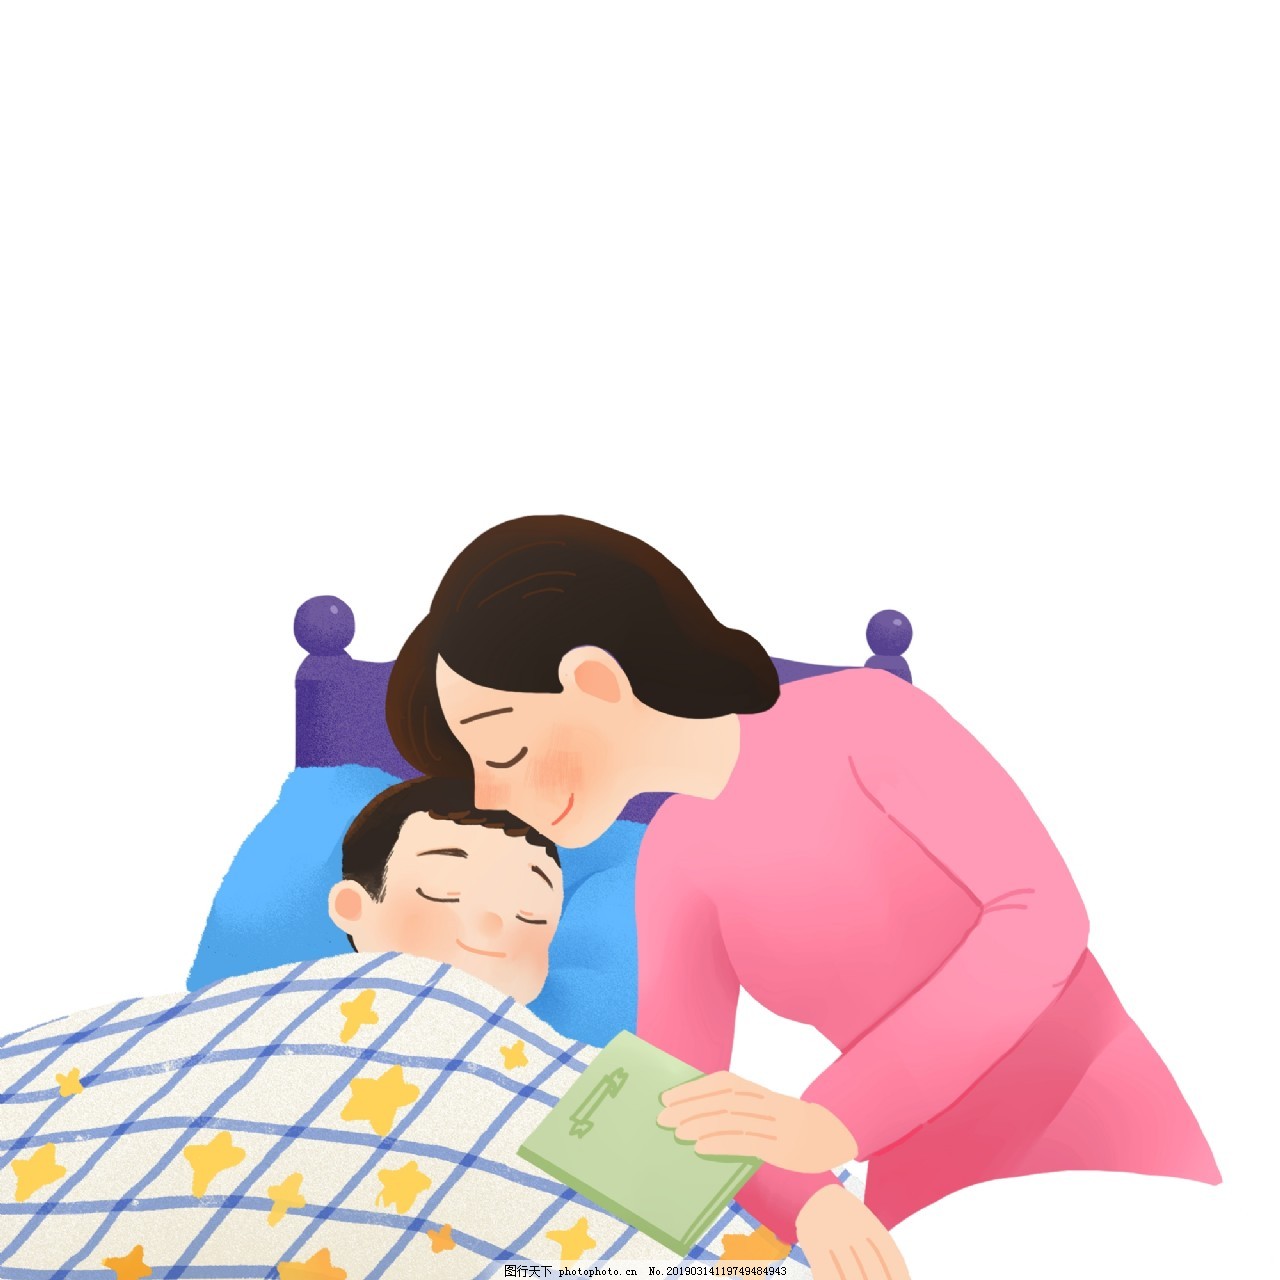 母亲节妈妈抱着孩子睡觉小清新治愈系插画素材图片下载-素材编号00373125-素材天下图库